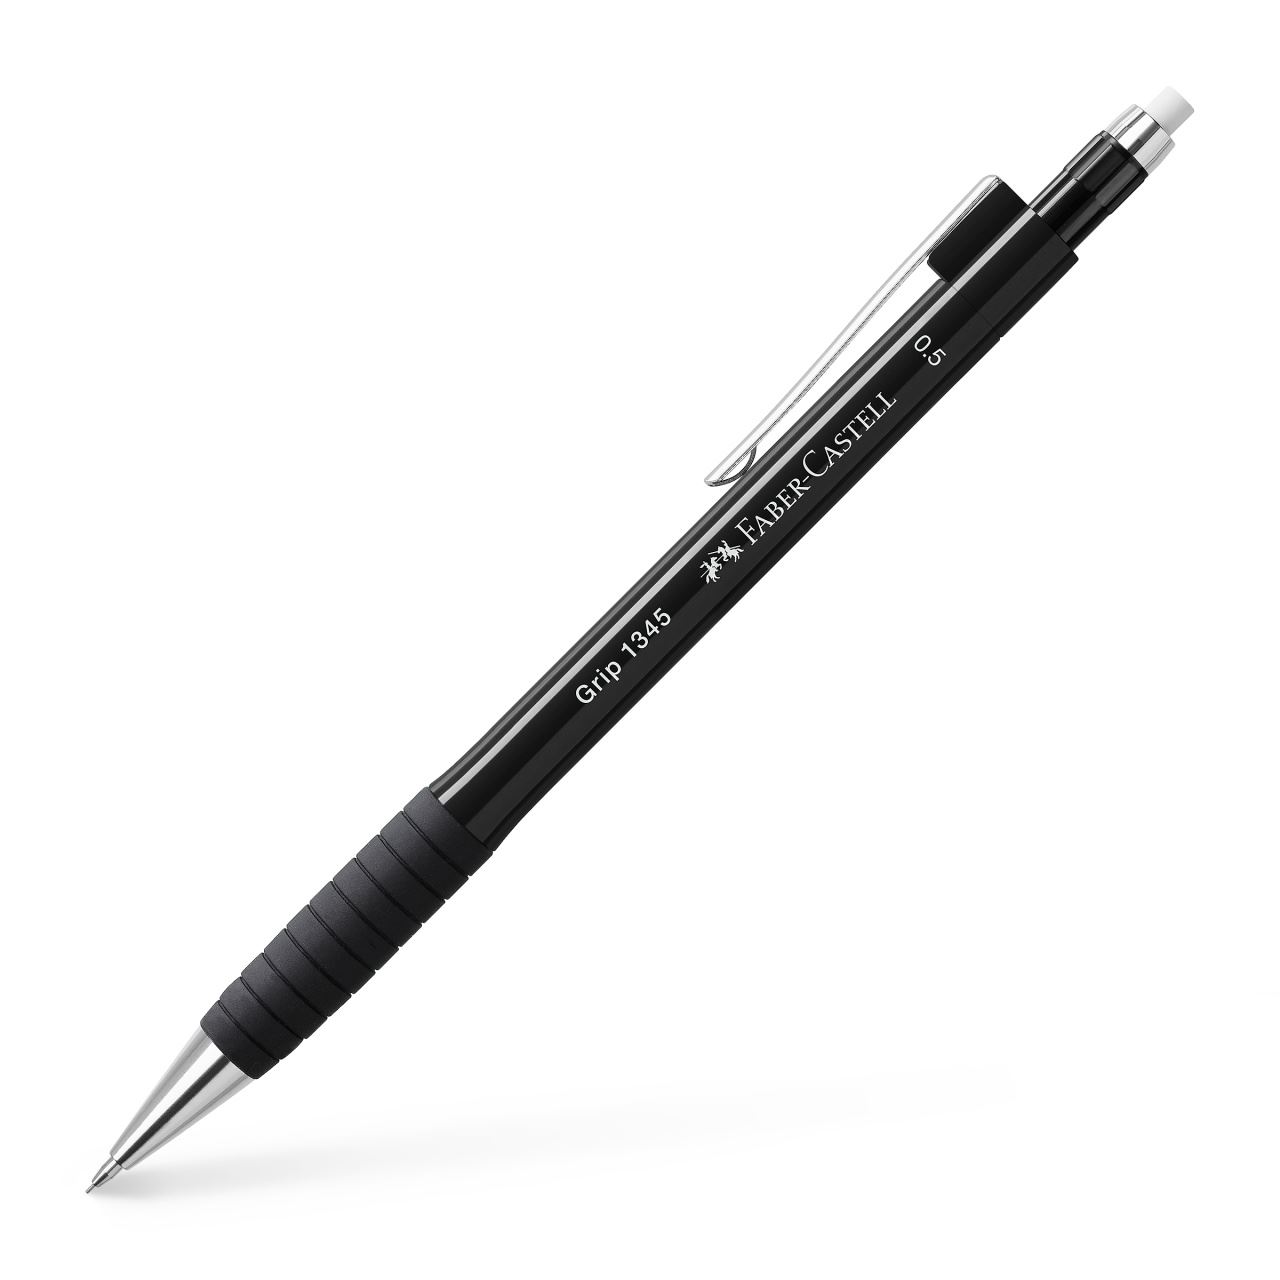 Faber-Castell - Grip 1345 mechanical pencil, 0.5 mm, black metallic